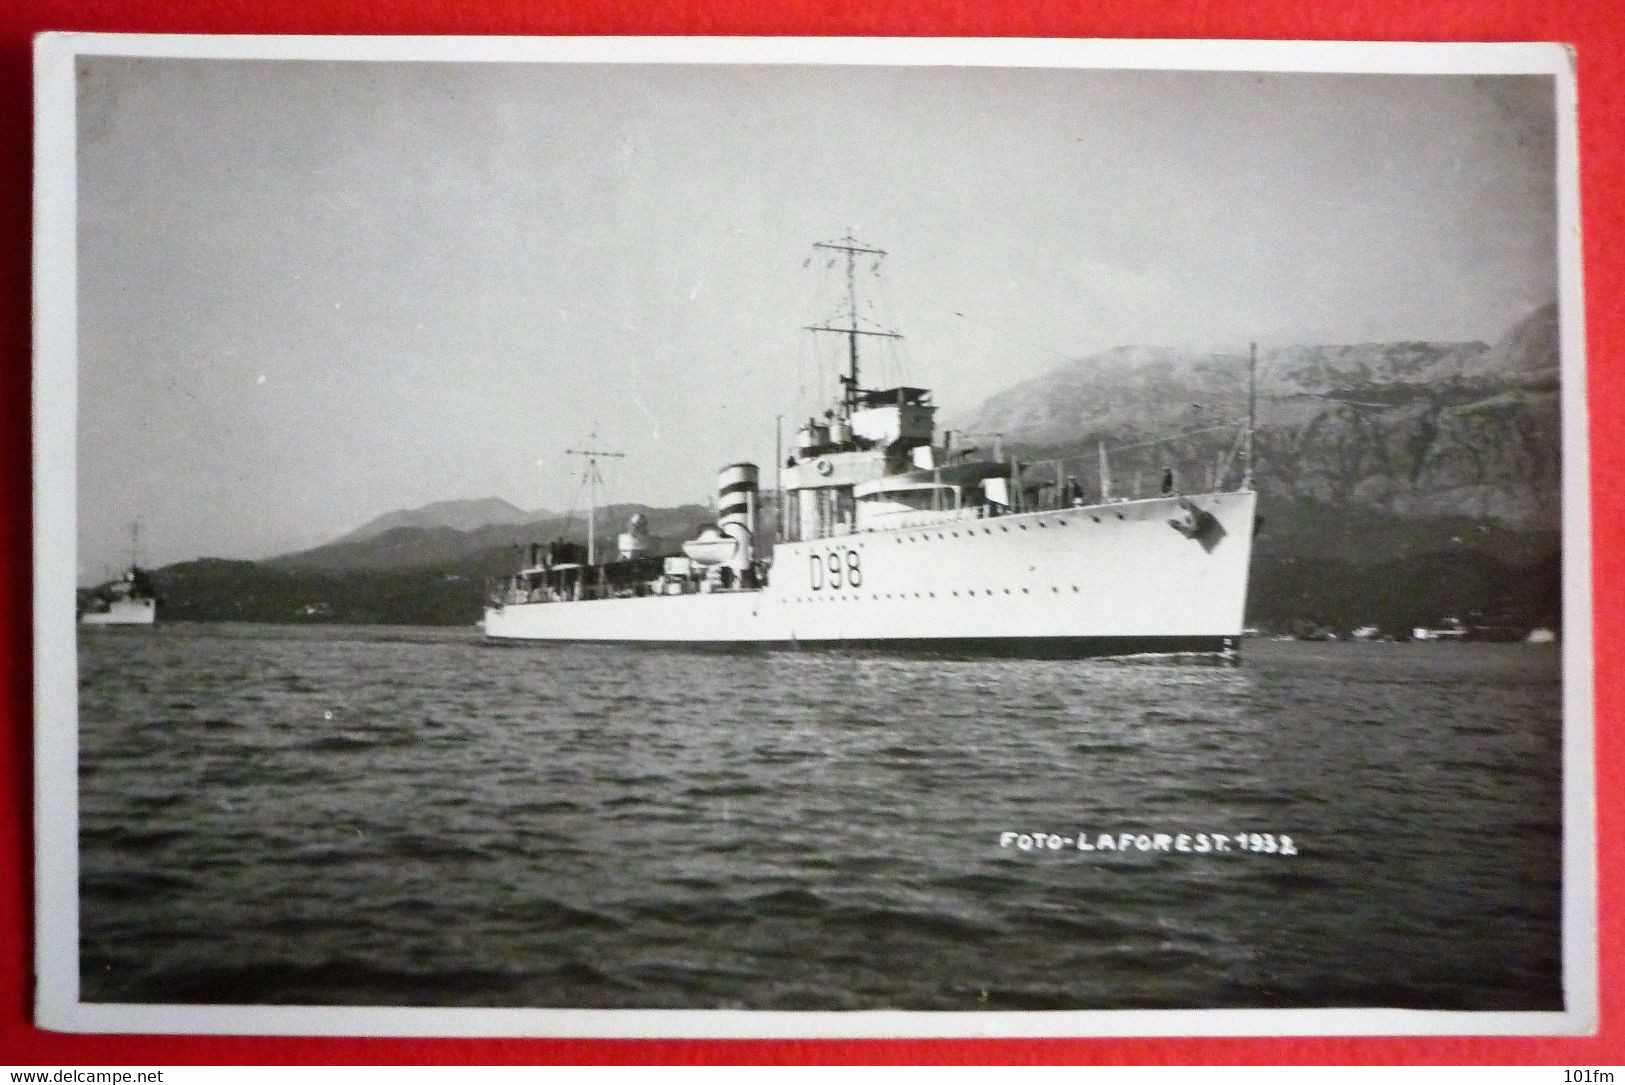 HMS WOLSEY W CLASS DESTROYER IN CATTARO MONTENEGRO 1932 - Krieg